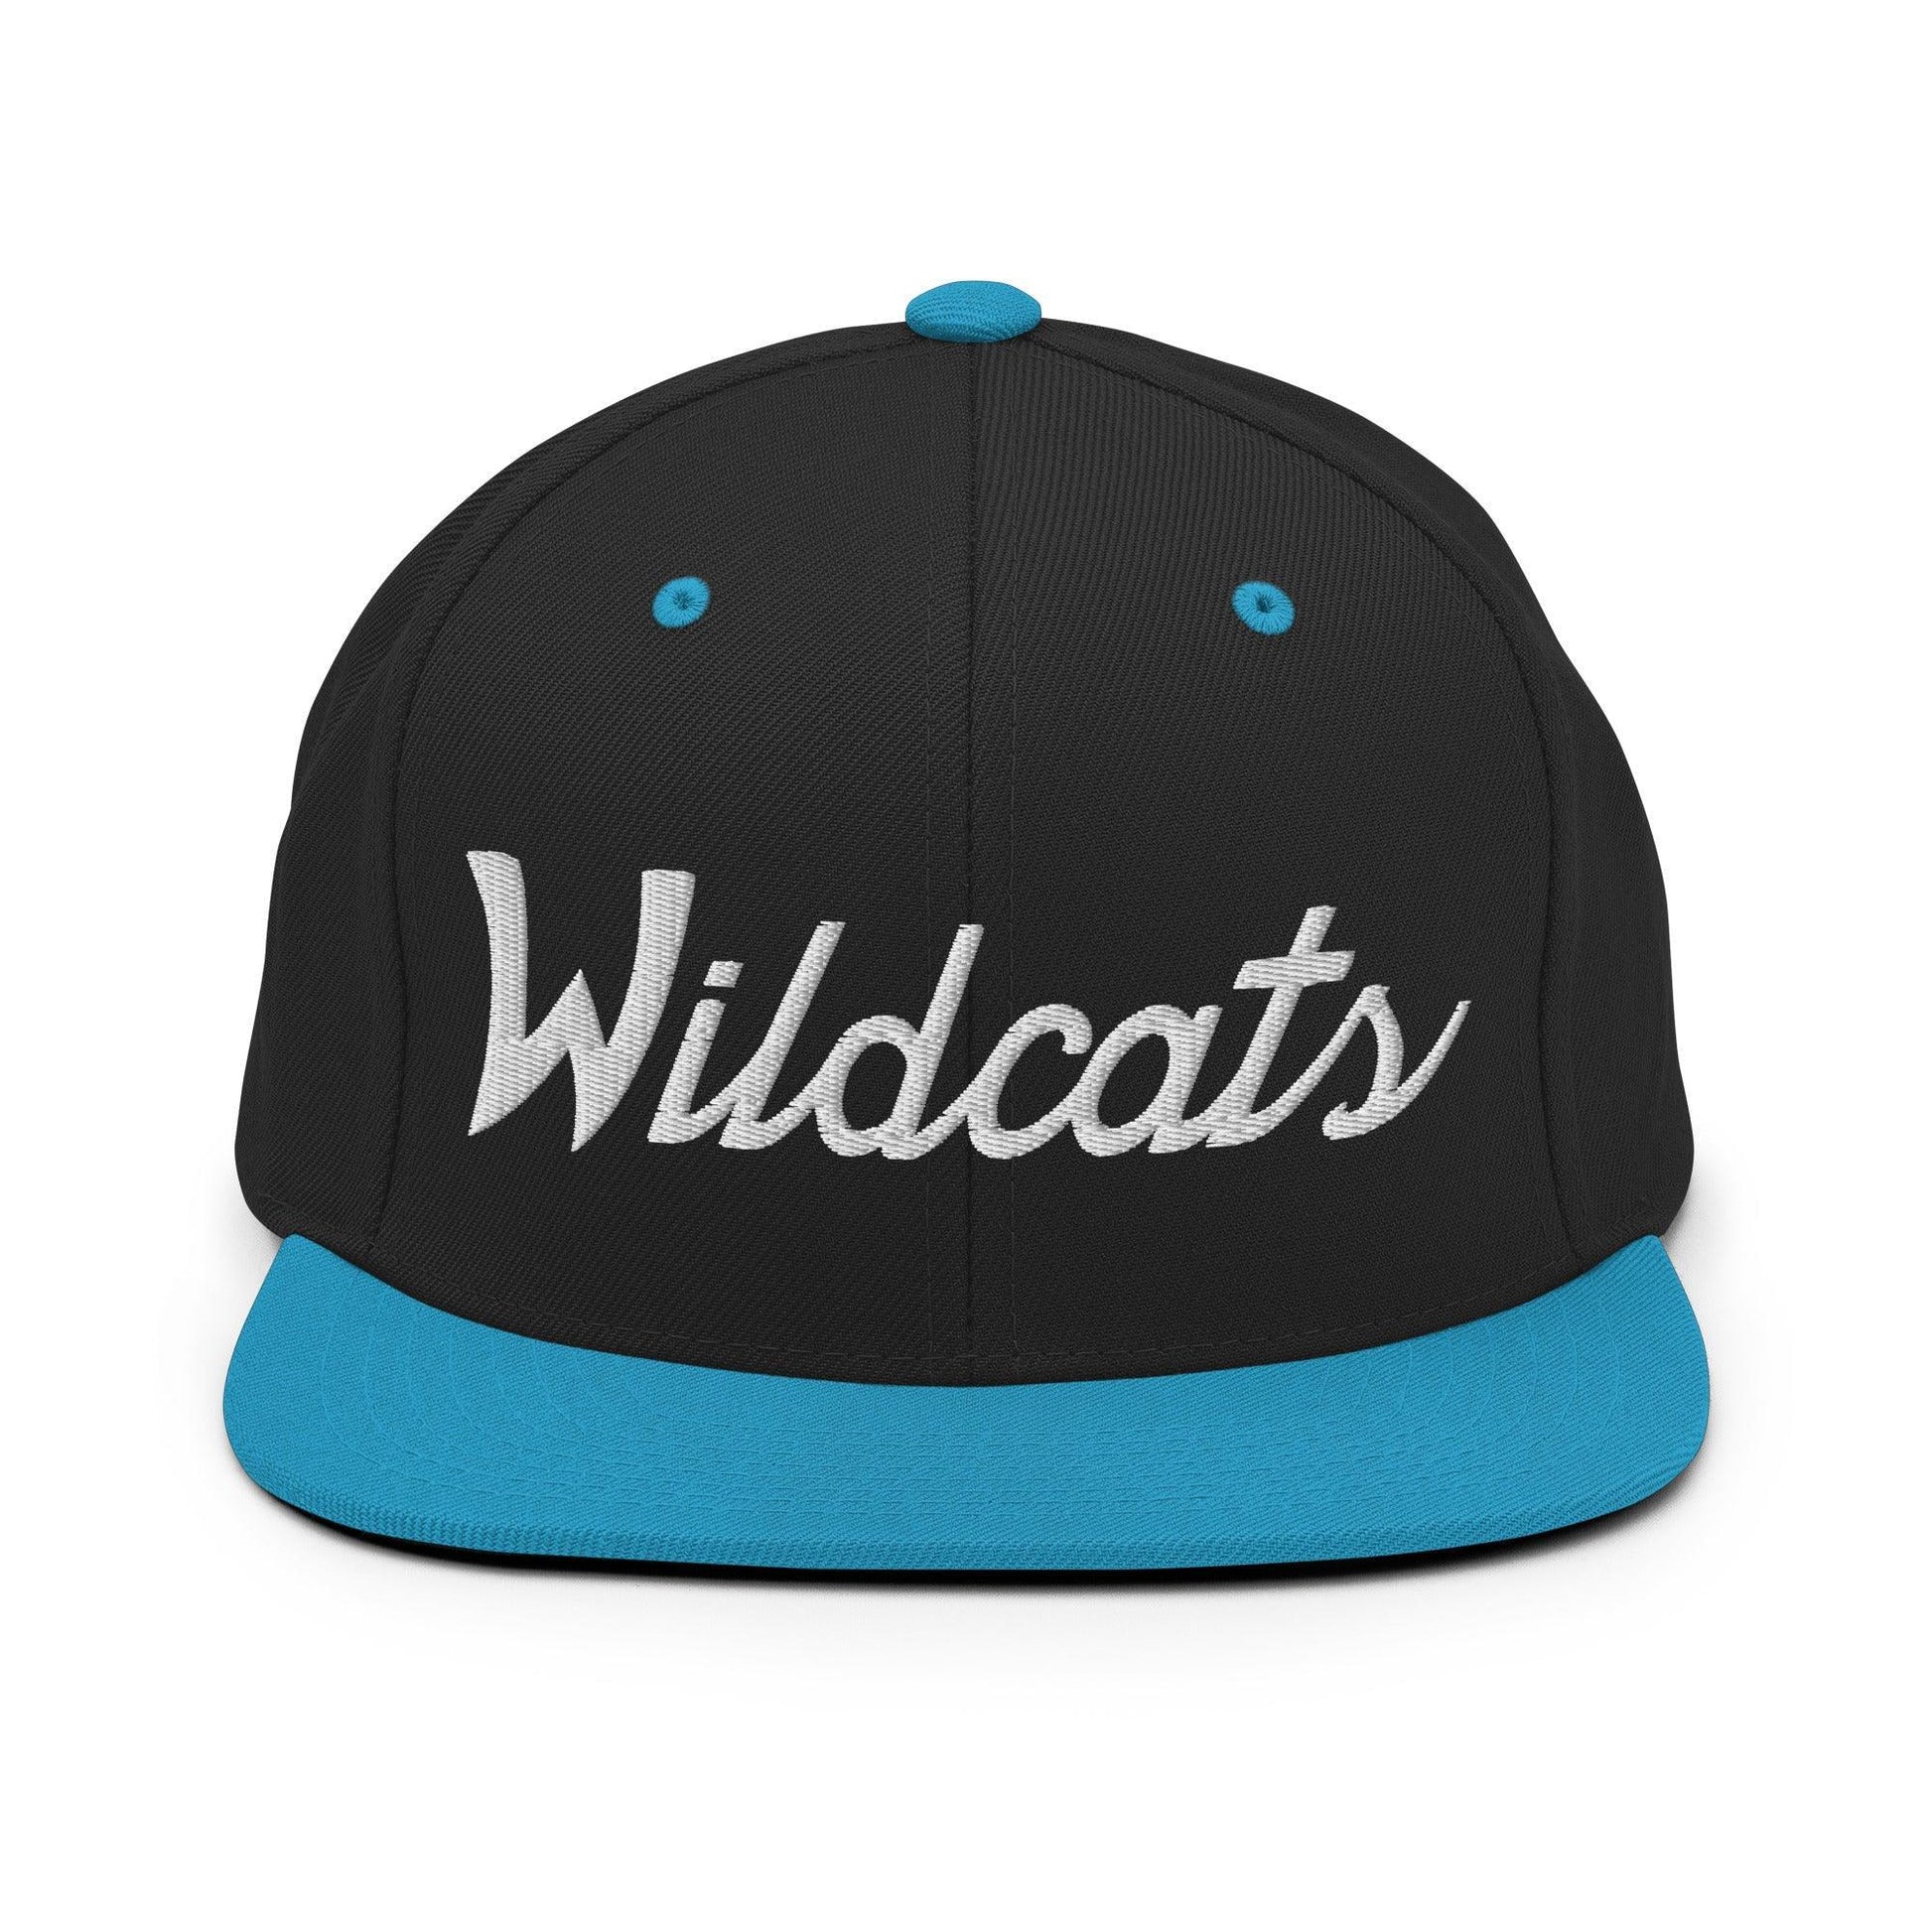 Wildcats School Mascot Script Snapback Hat Black/ Teal